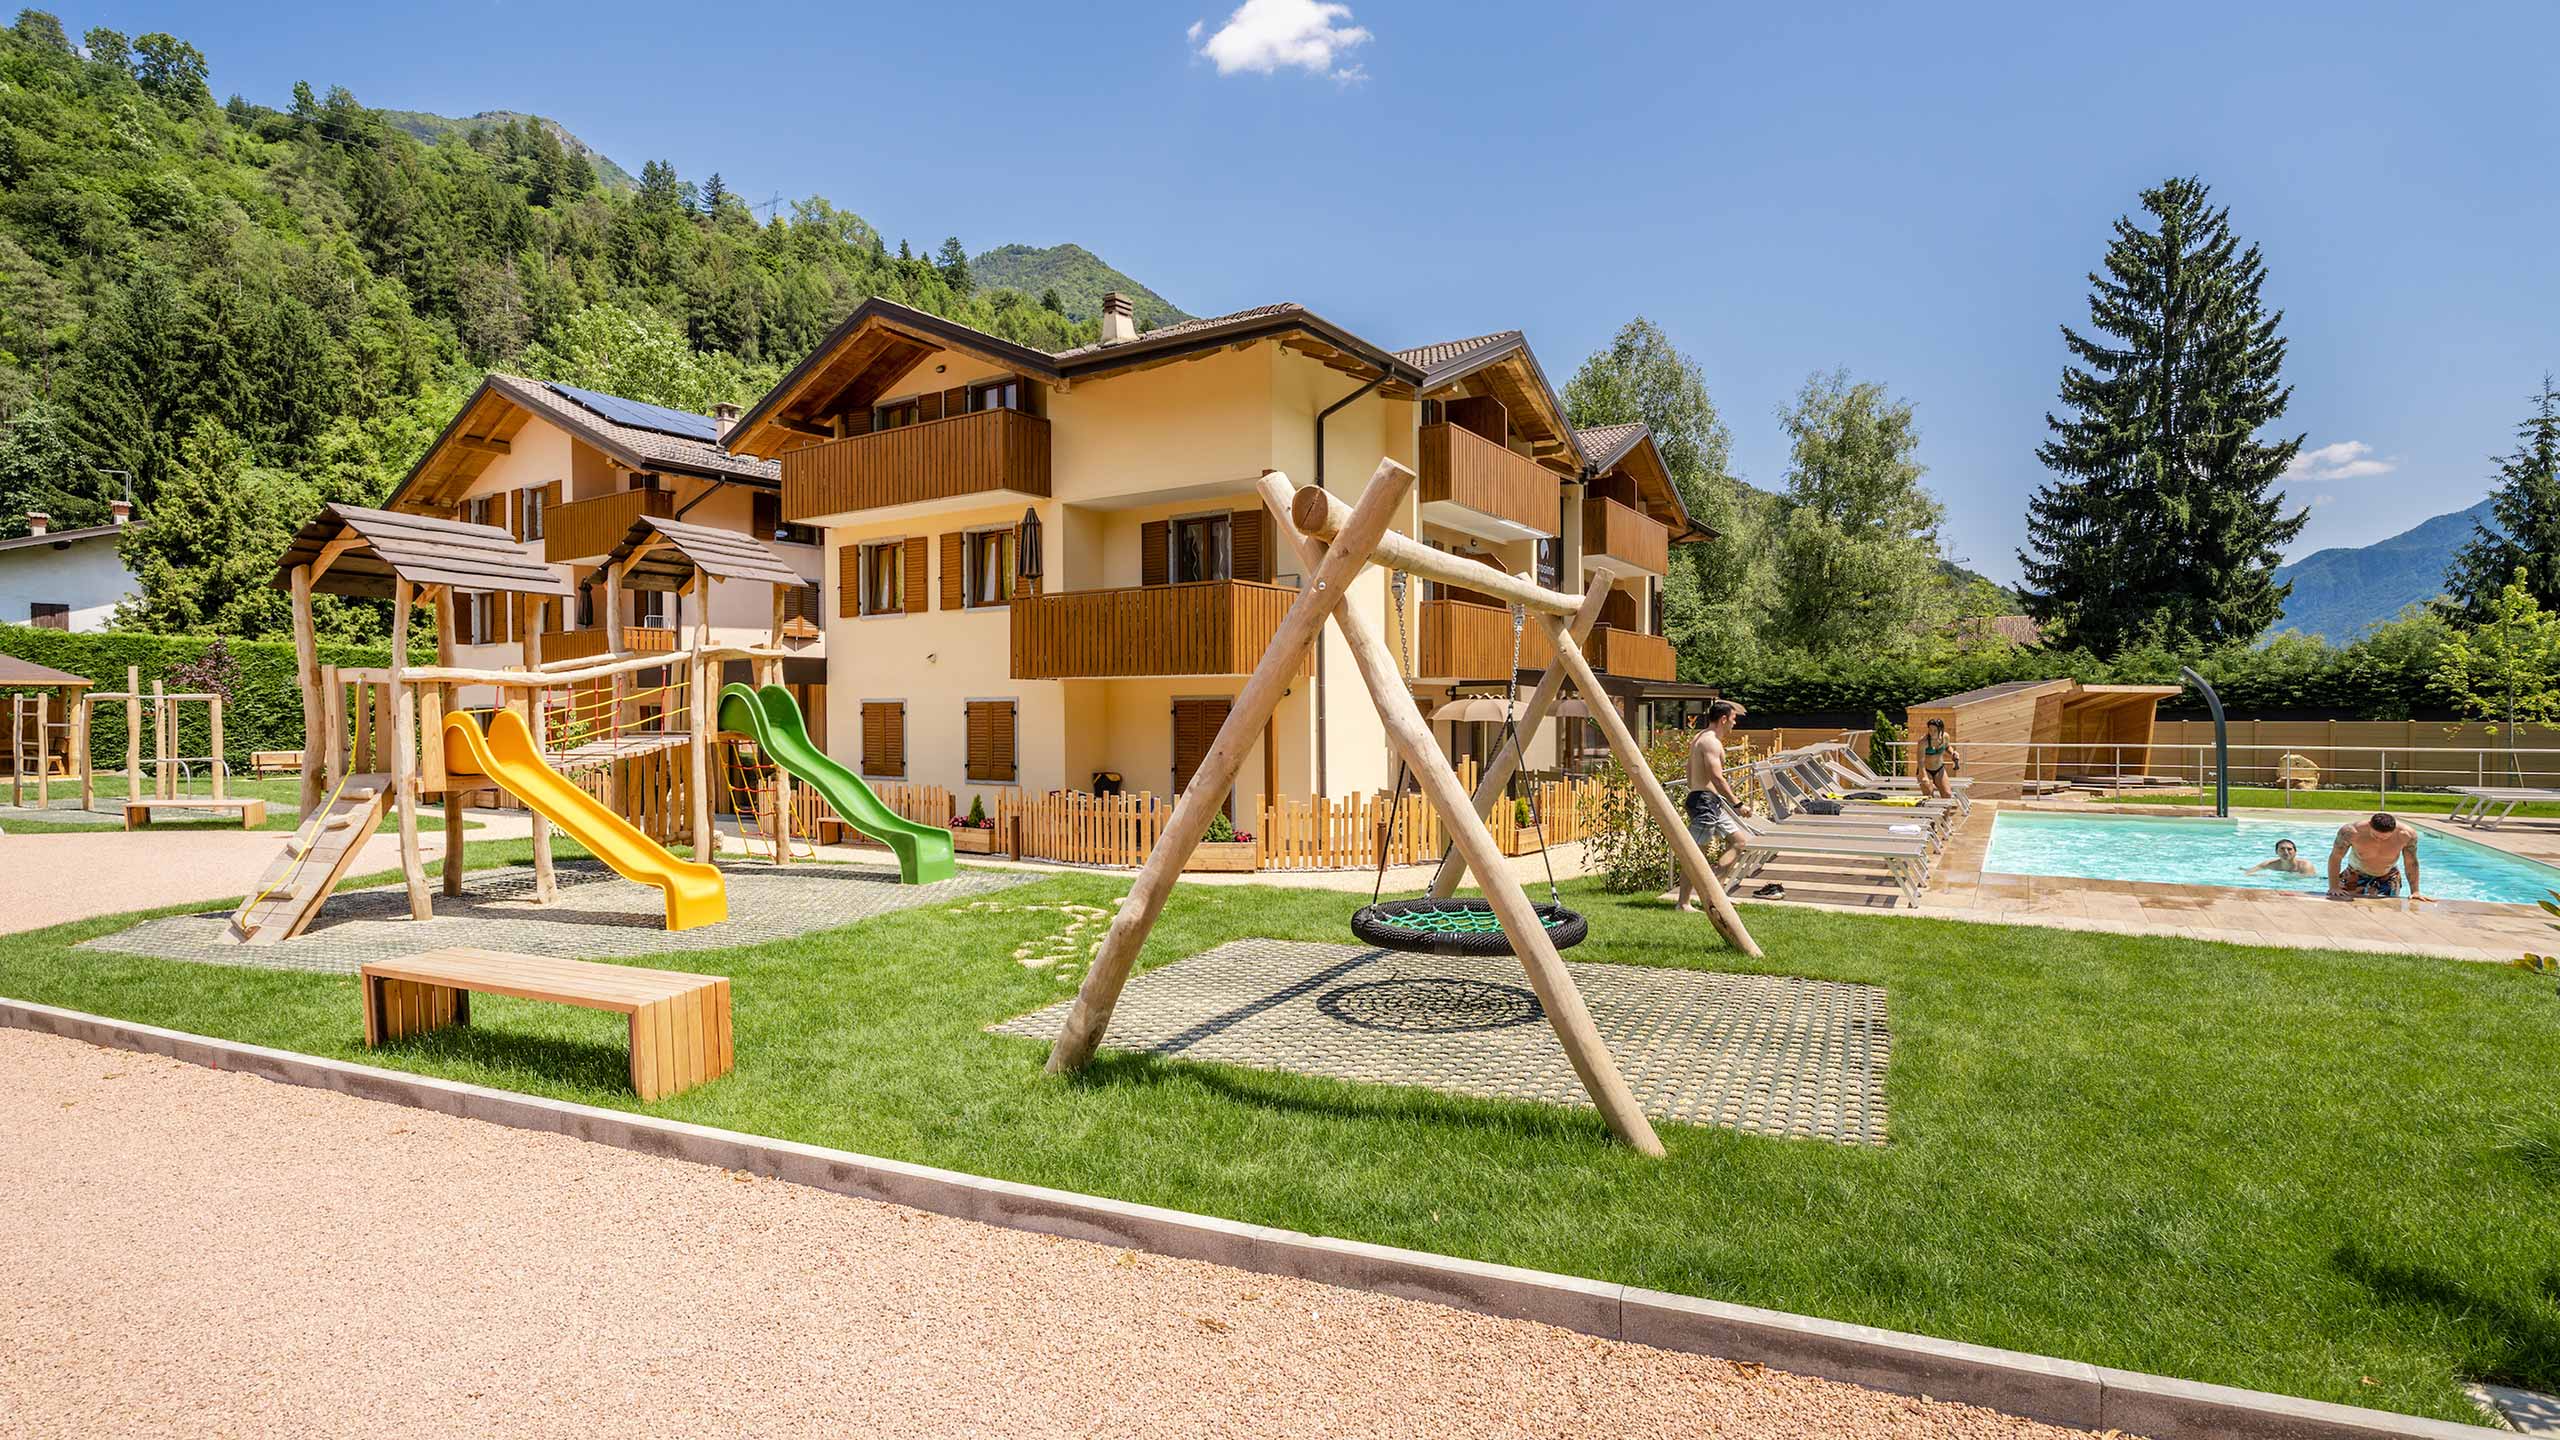 Crosina Holiday - appartamenti vicino al Lago di Ledro in Trentino per una vacanza in coppia o in famiglia  Benvenuti al Residence Toli